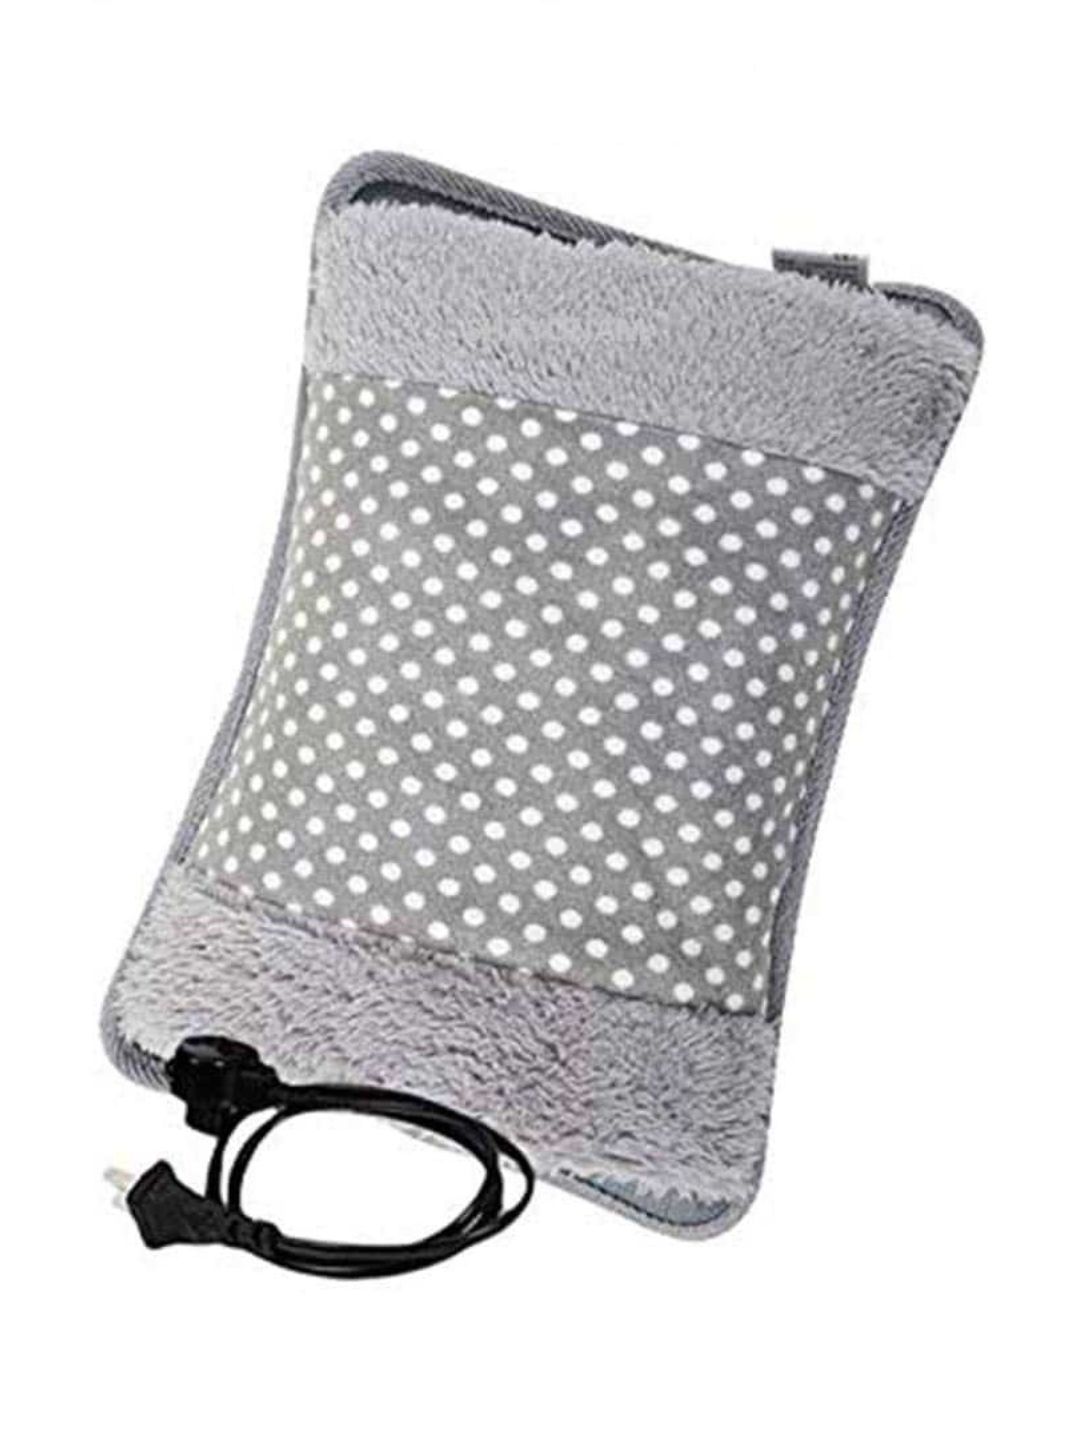 Kasrat velvet heating gel pad for pain relief (Assorted)